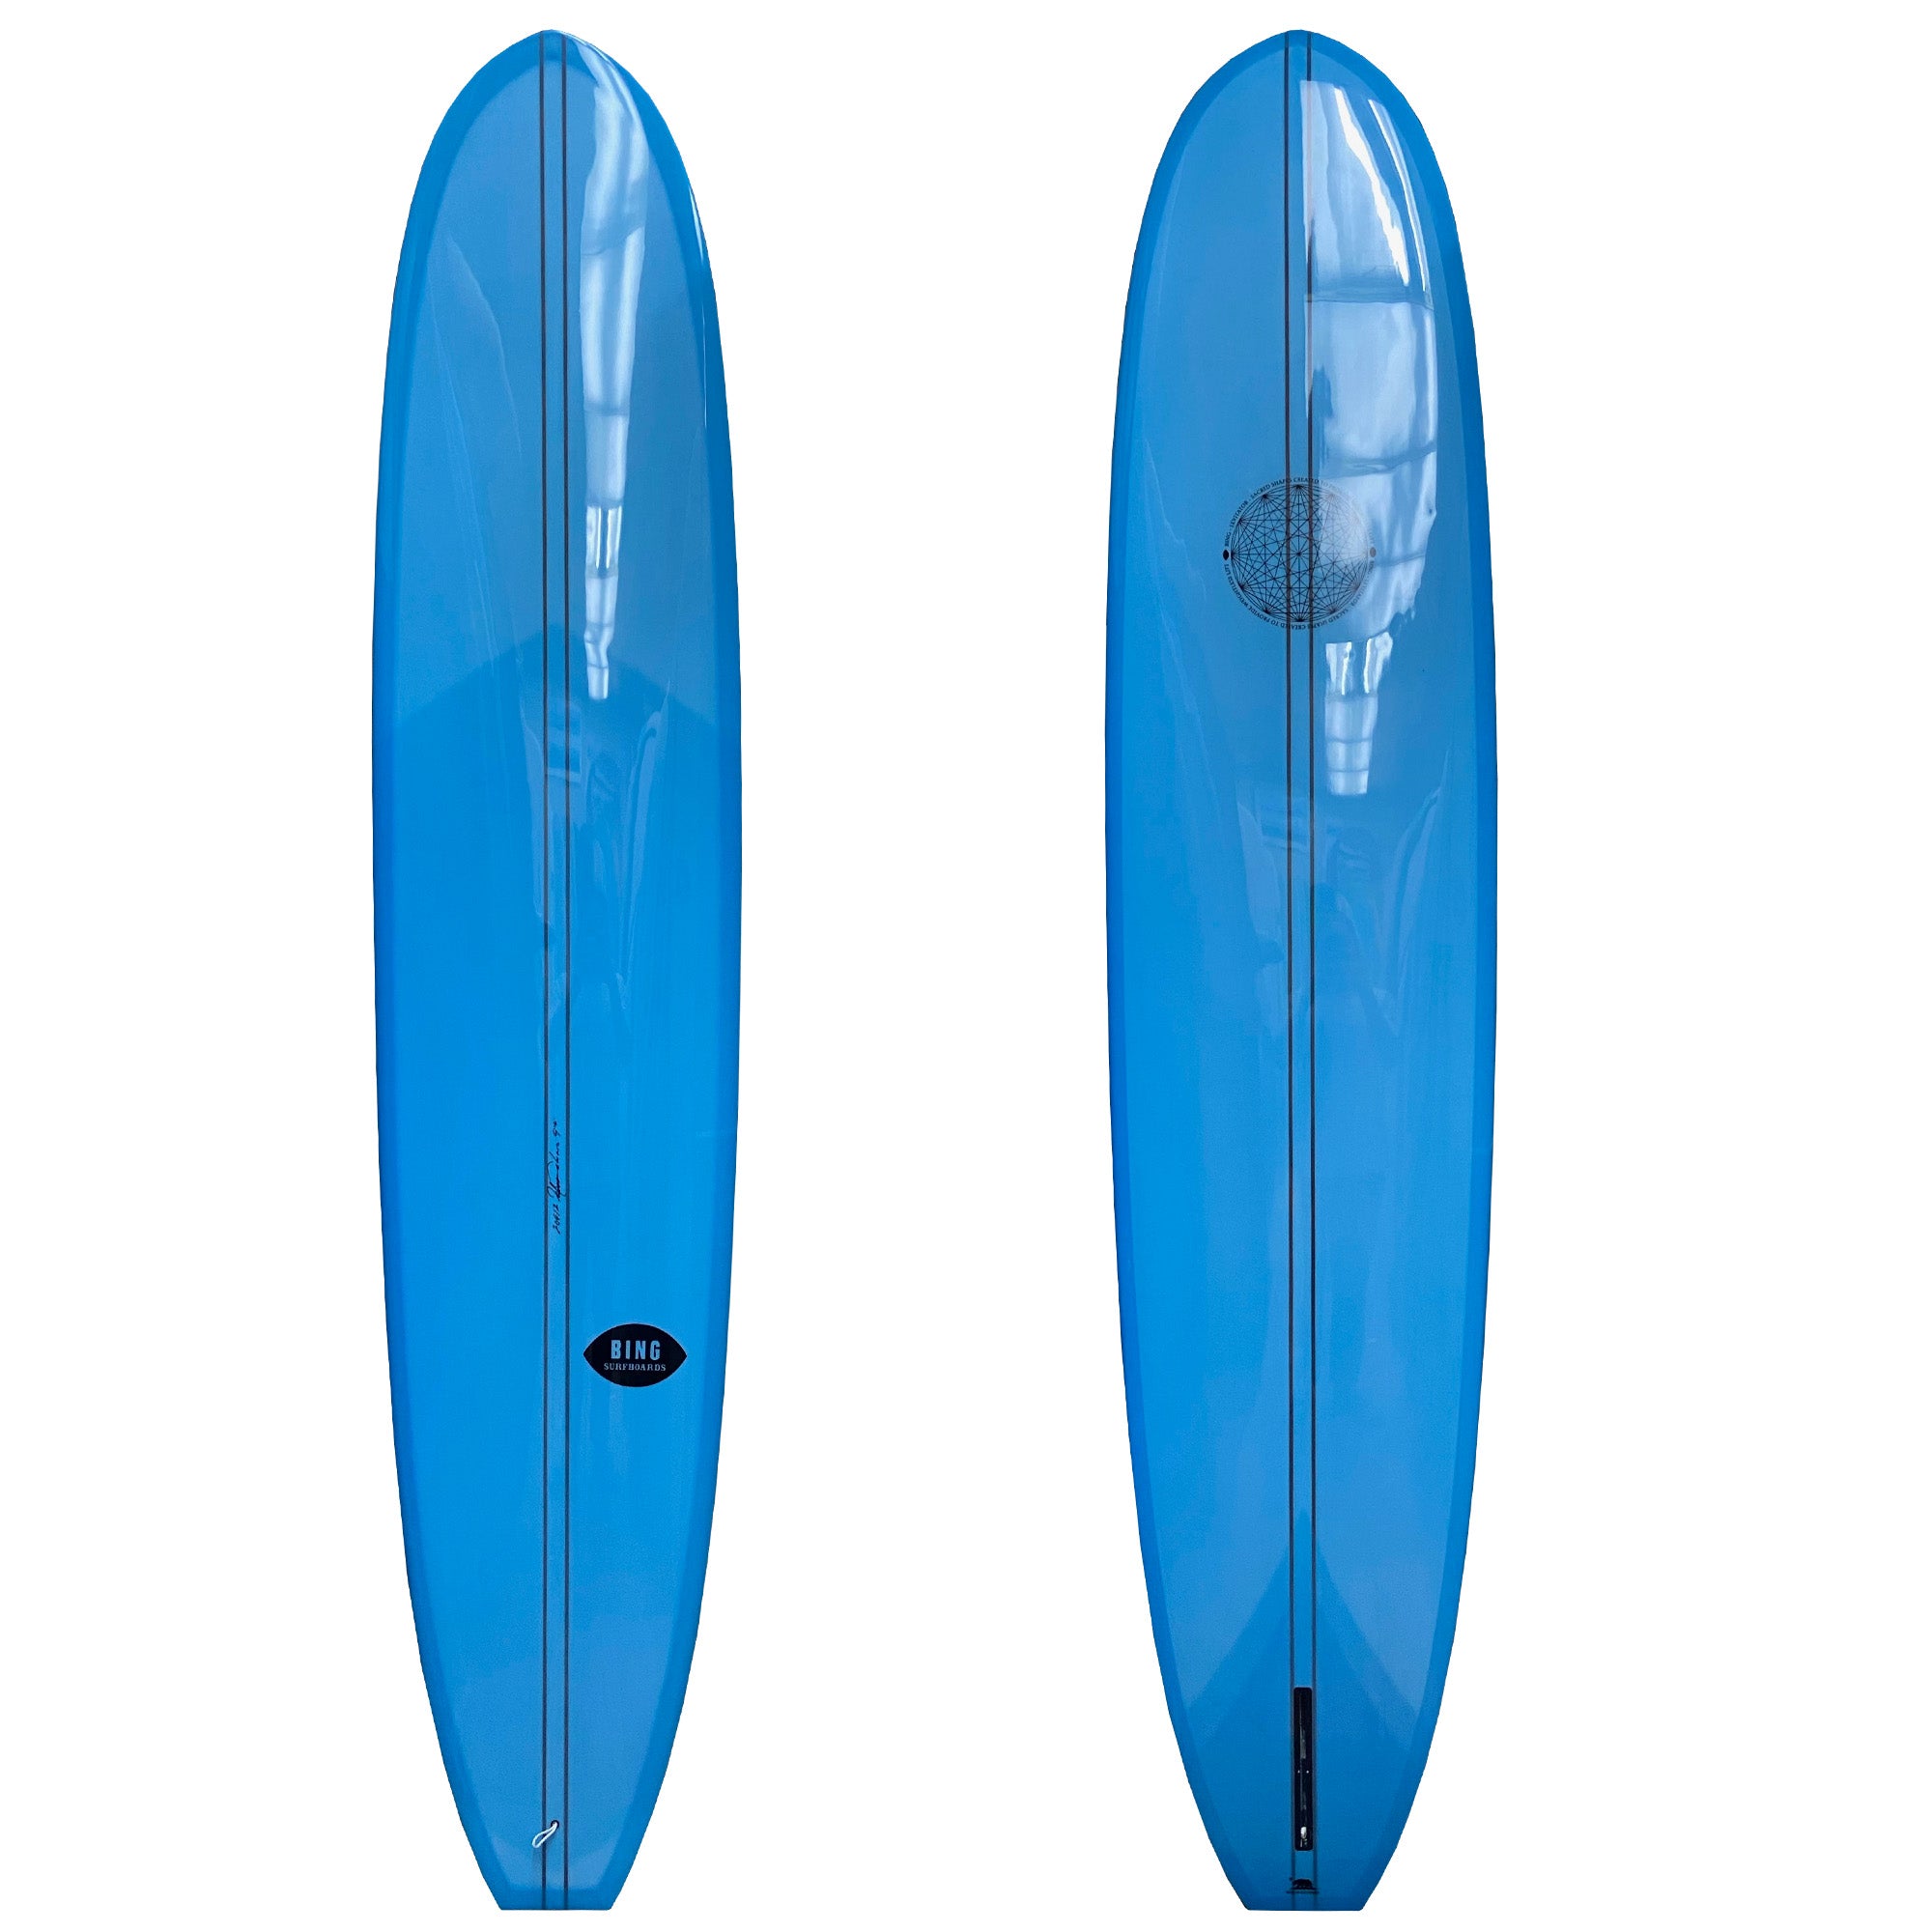 Bing Levitator Type II Longboard Surfboard